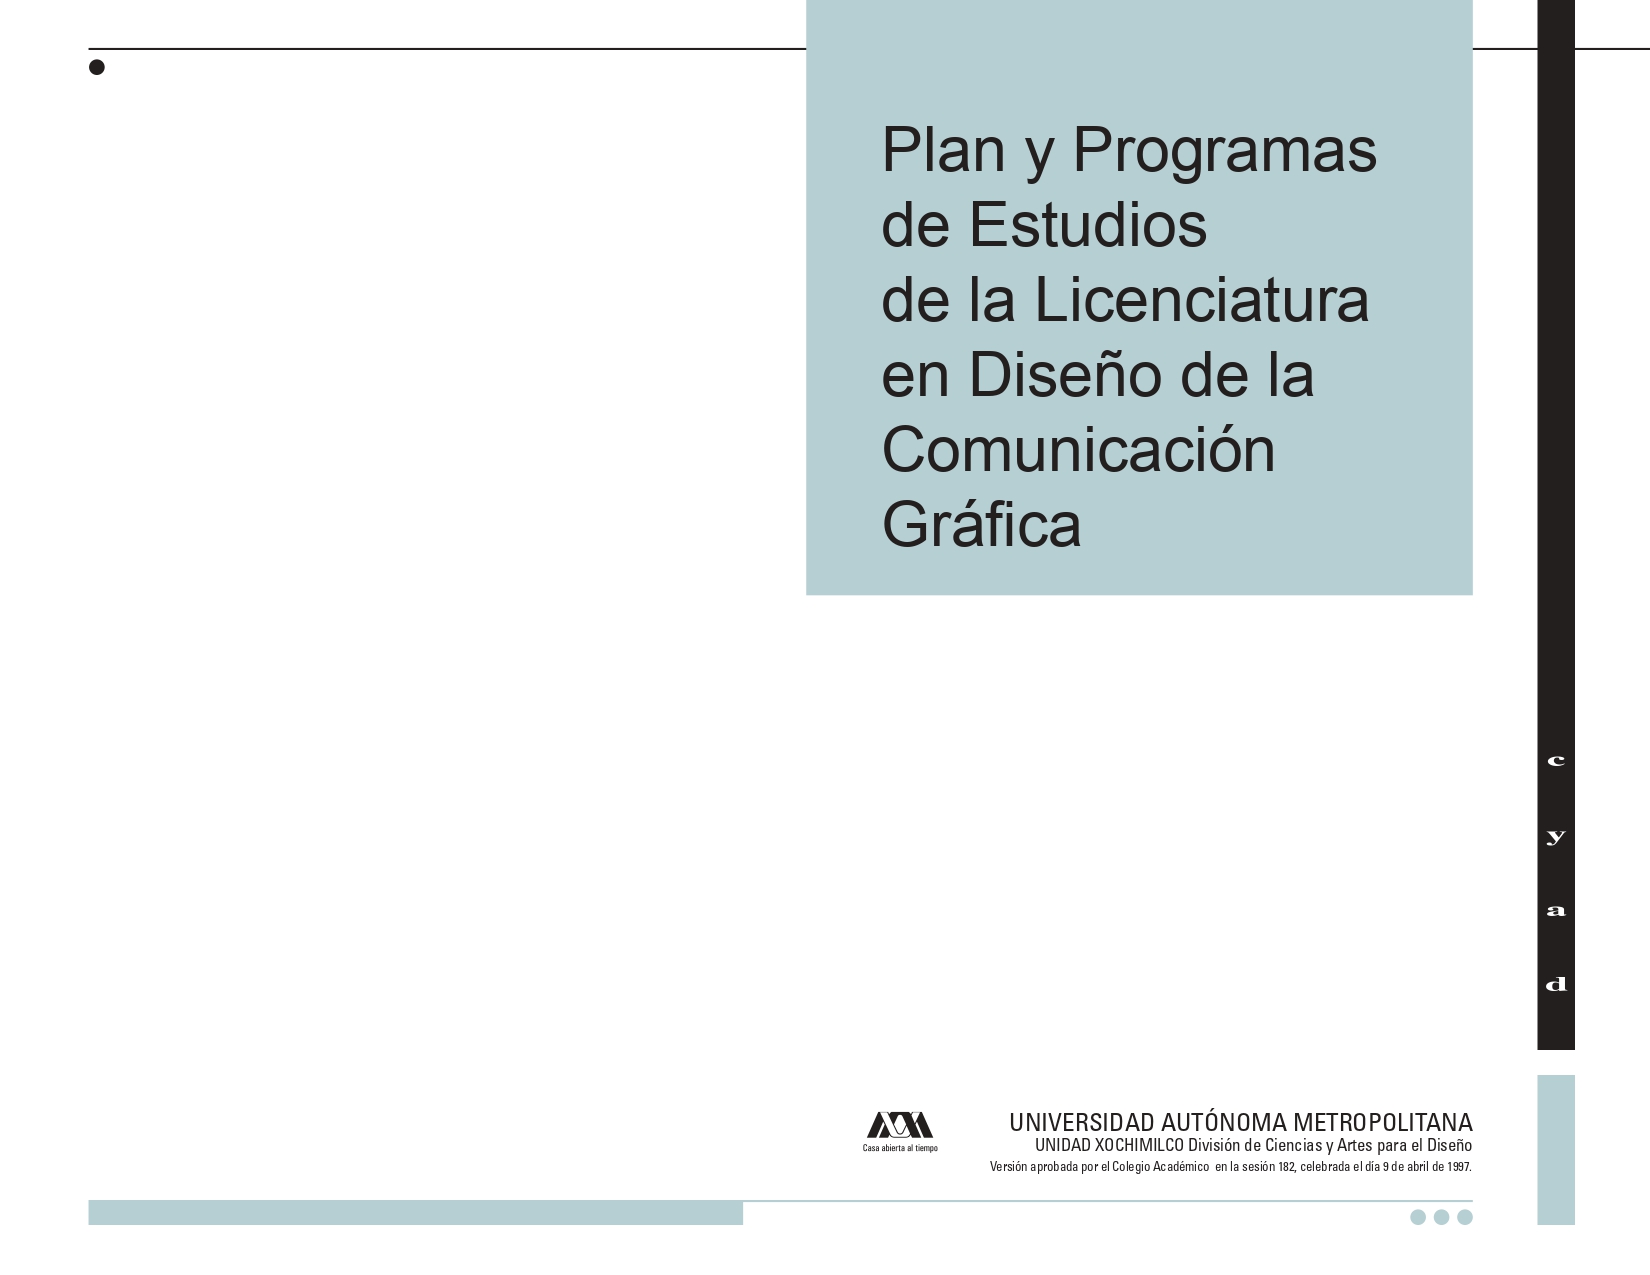 Plan y programa de estudios de la licenciatura en DCG